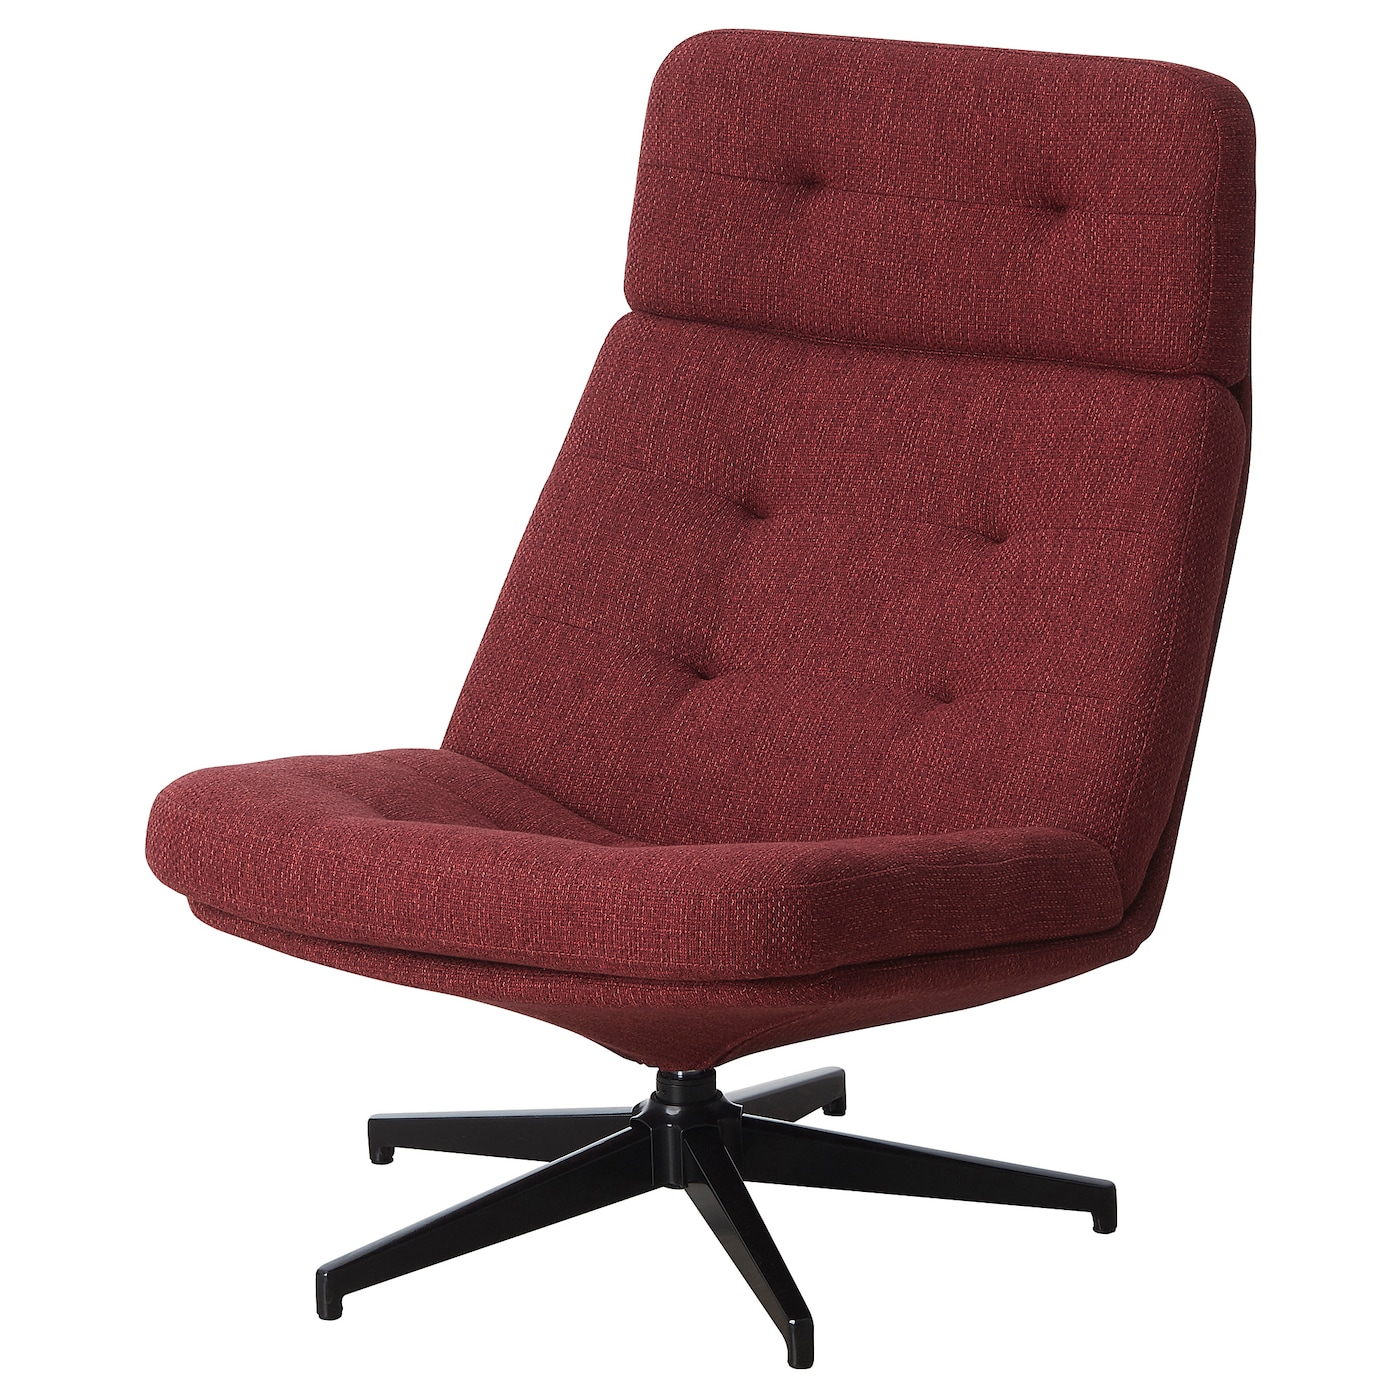 ХАВБЕРГ Вращающееся кресло, Лейде красно-коричневый HAVBERG IKEA домашнее кресло ihome компьютерное кресло эргономичное кресло офисное кресло вращающееся кресло электрическое кресло руководителя кресл